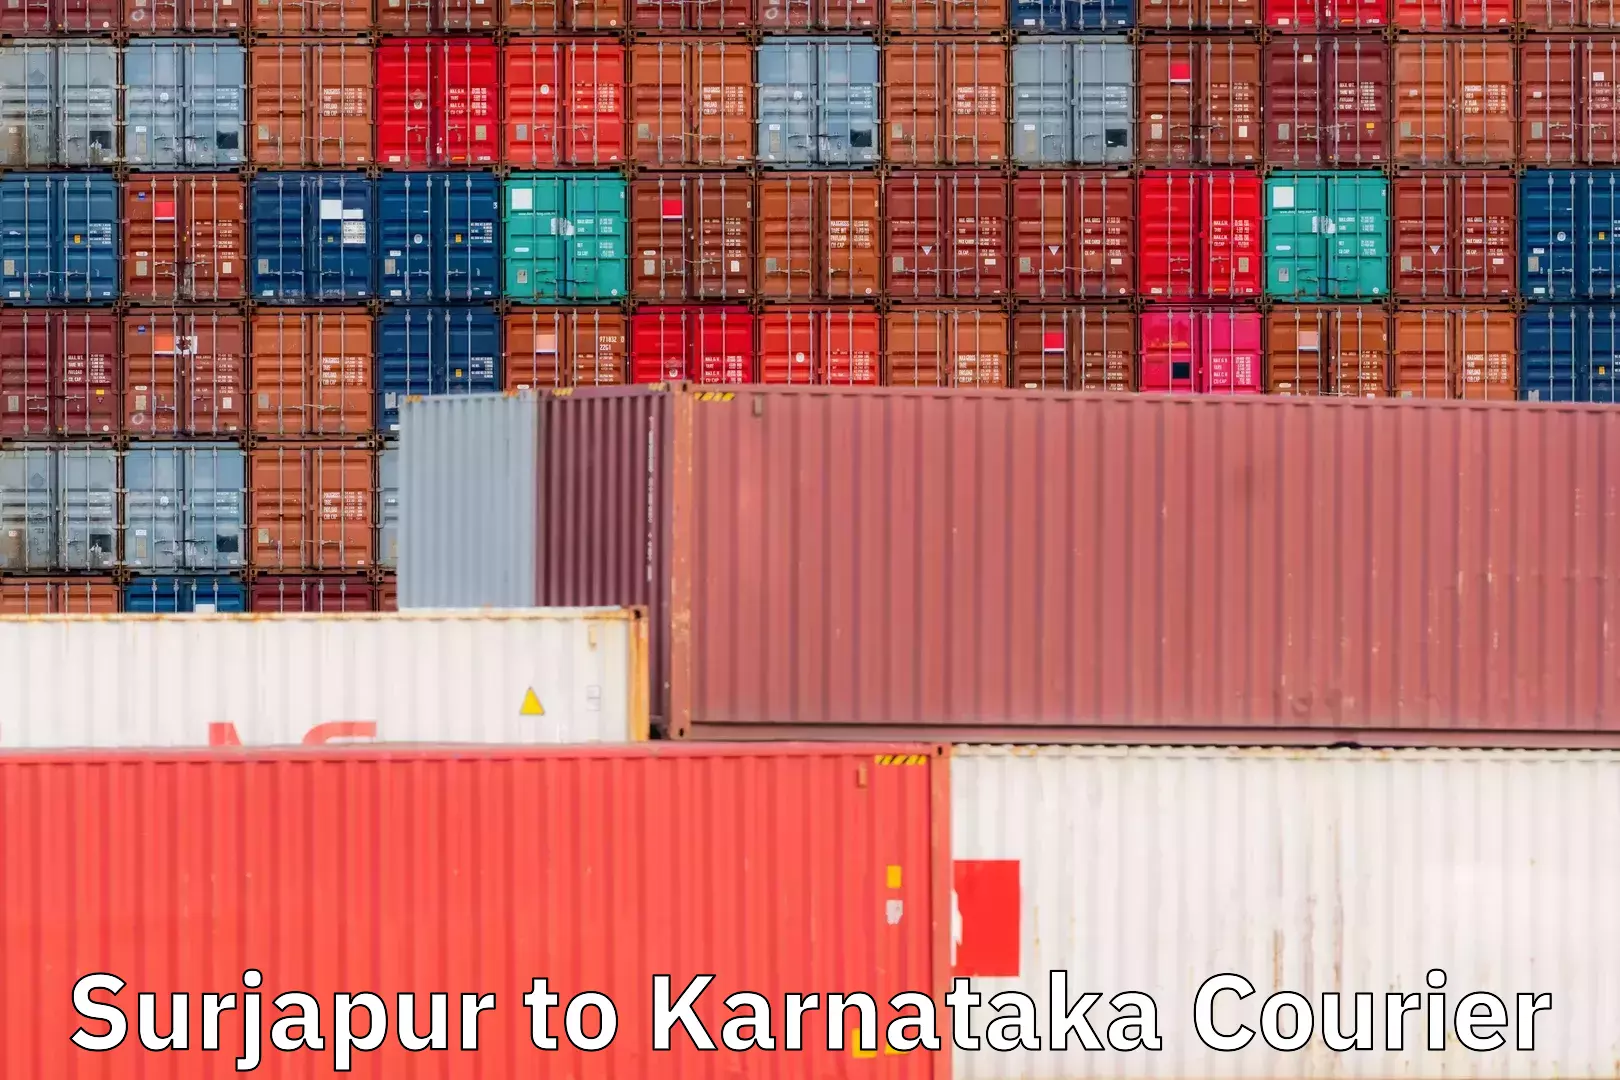 Multi-city courier Surjapur to Karnataka